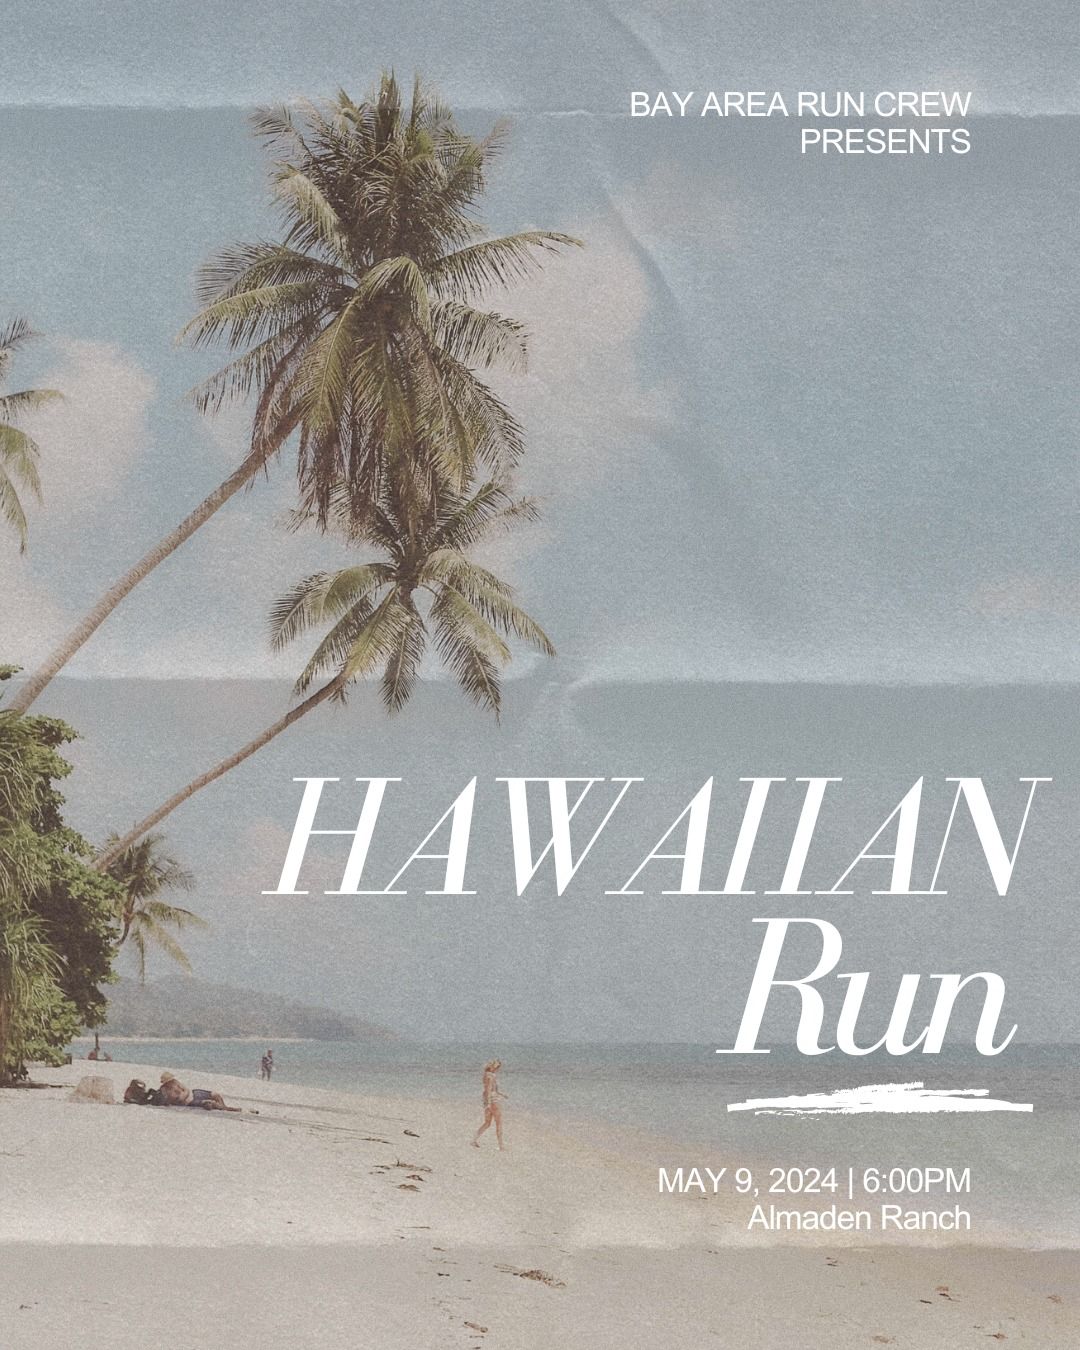 BARC Hawaiian Run